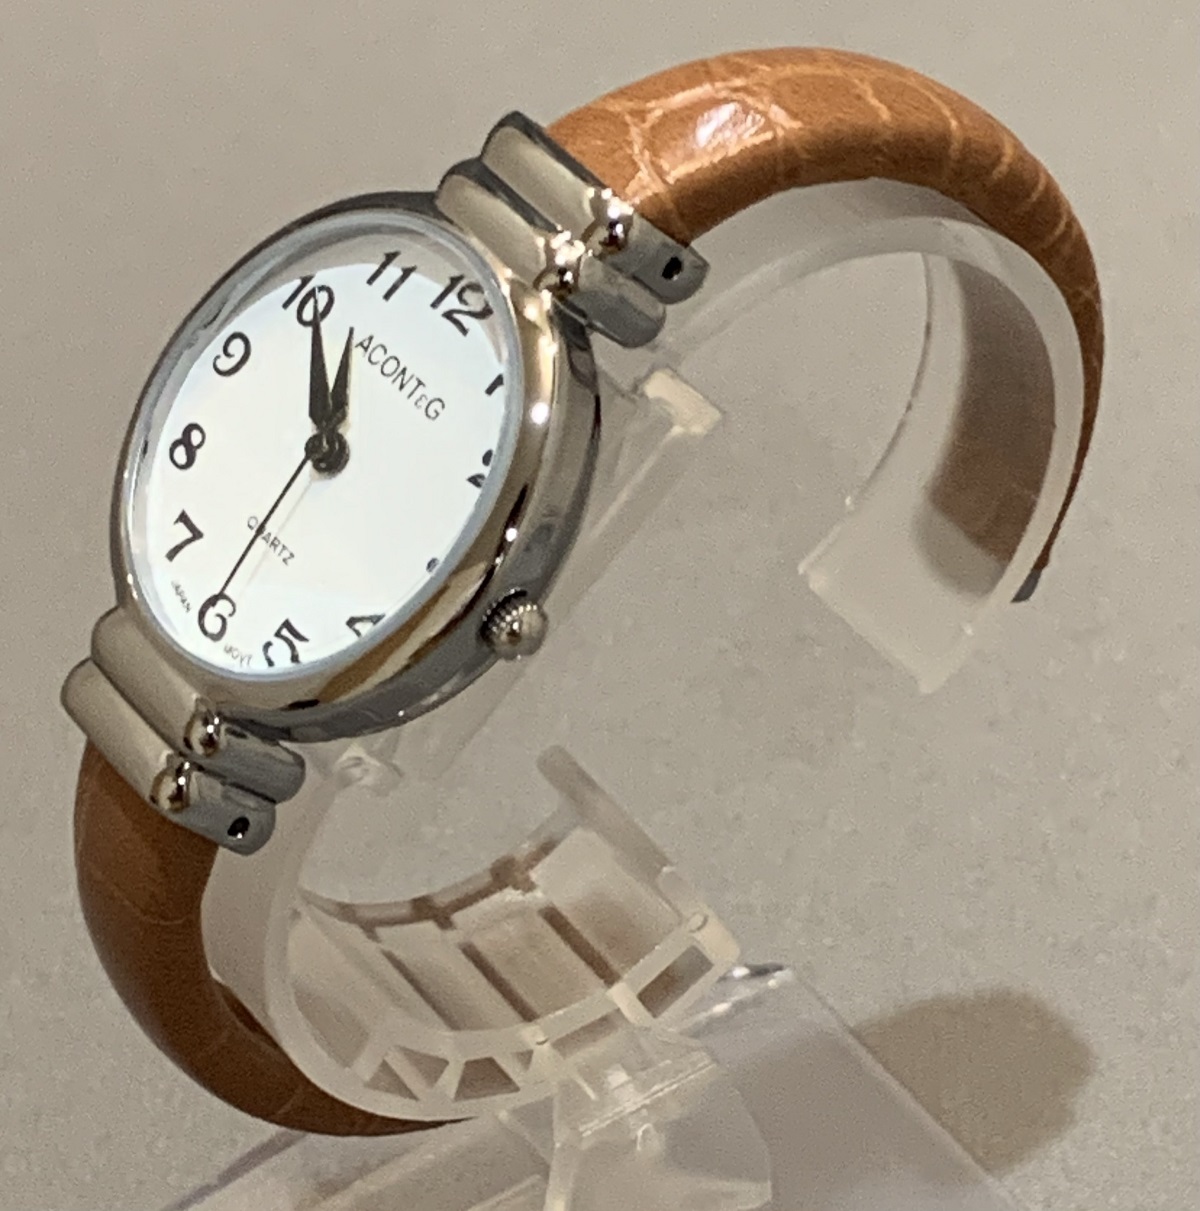  наручные часы женский мода часы браслет часы браслет сделано в Японии Movement Brown черный зеленый wani кожа style 